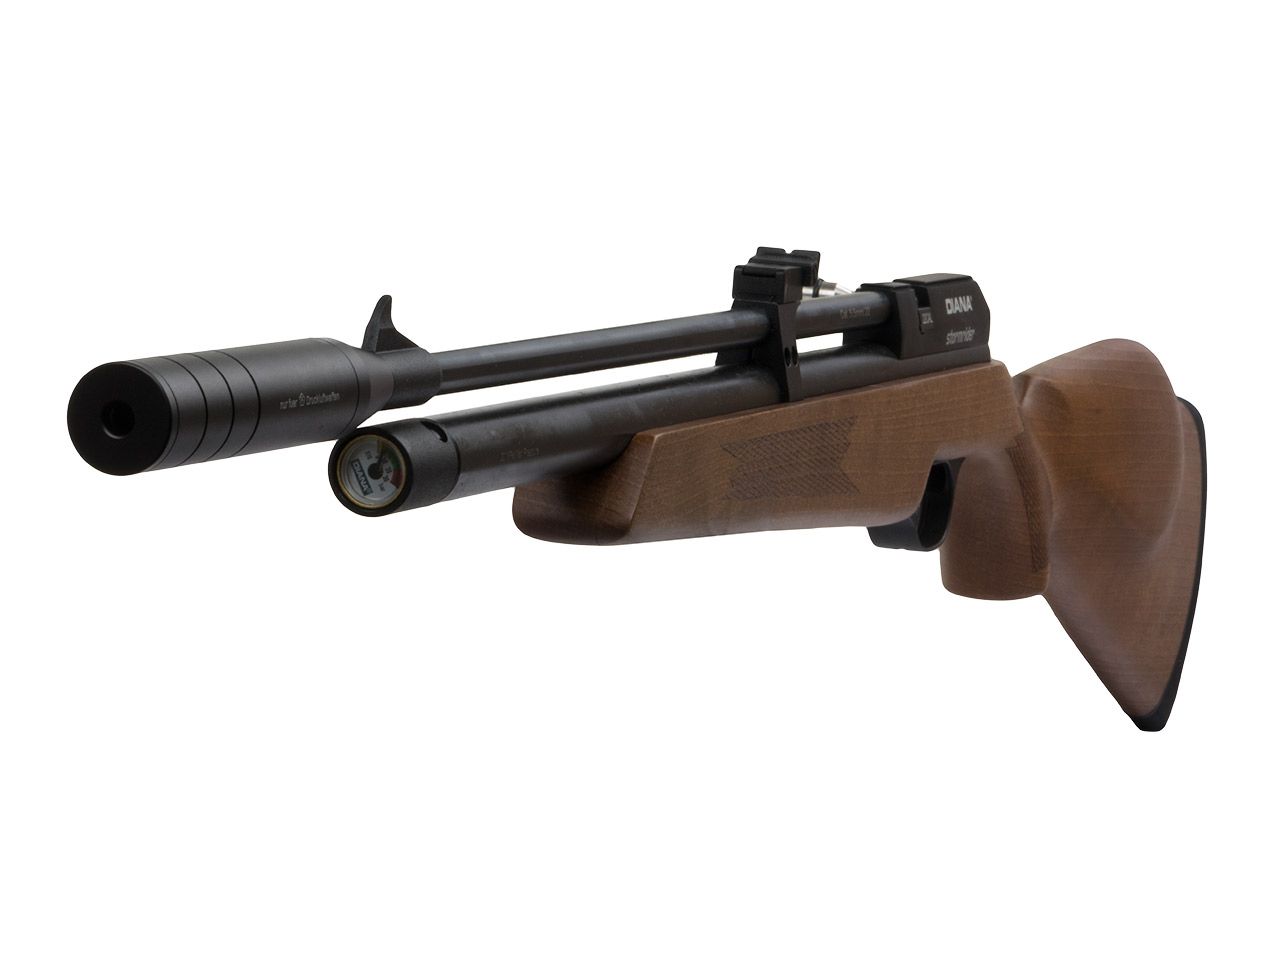 B-Ware Pressluftgewehr Diana Stormrider Holzschaft mit Regulator 7 Schuss Magazin SchalldĂ¤mpfer Kaliber 5,5 mm (P18)